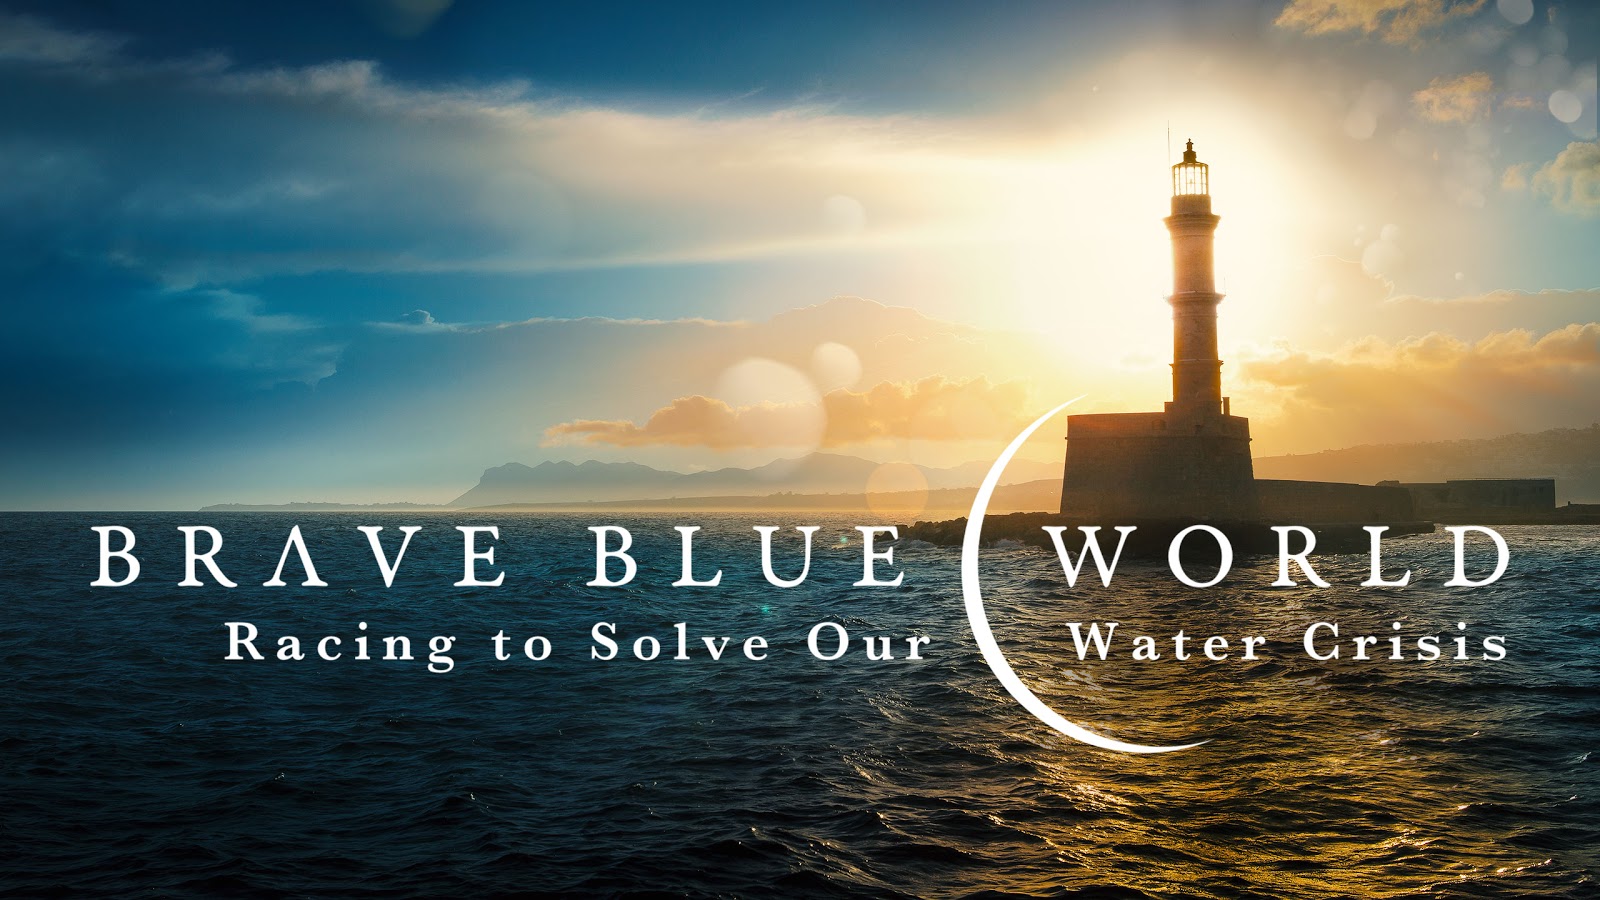 Water documentary goes mainstream